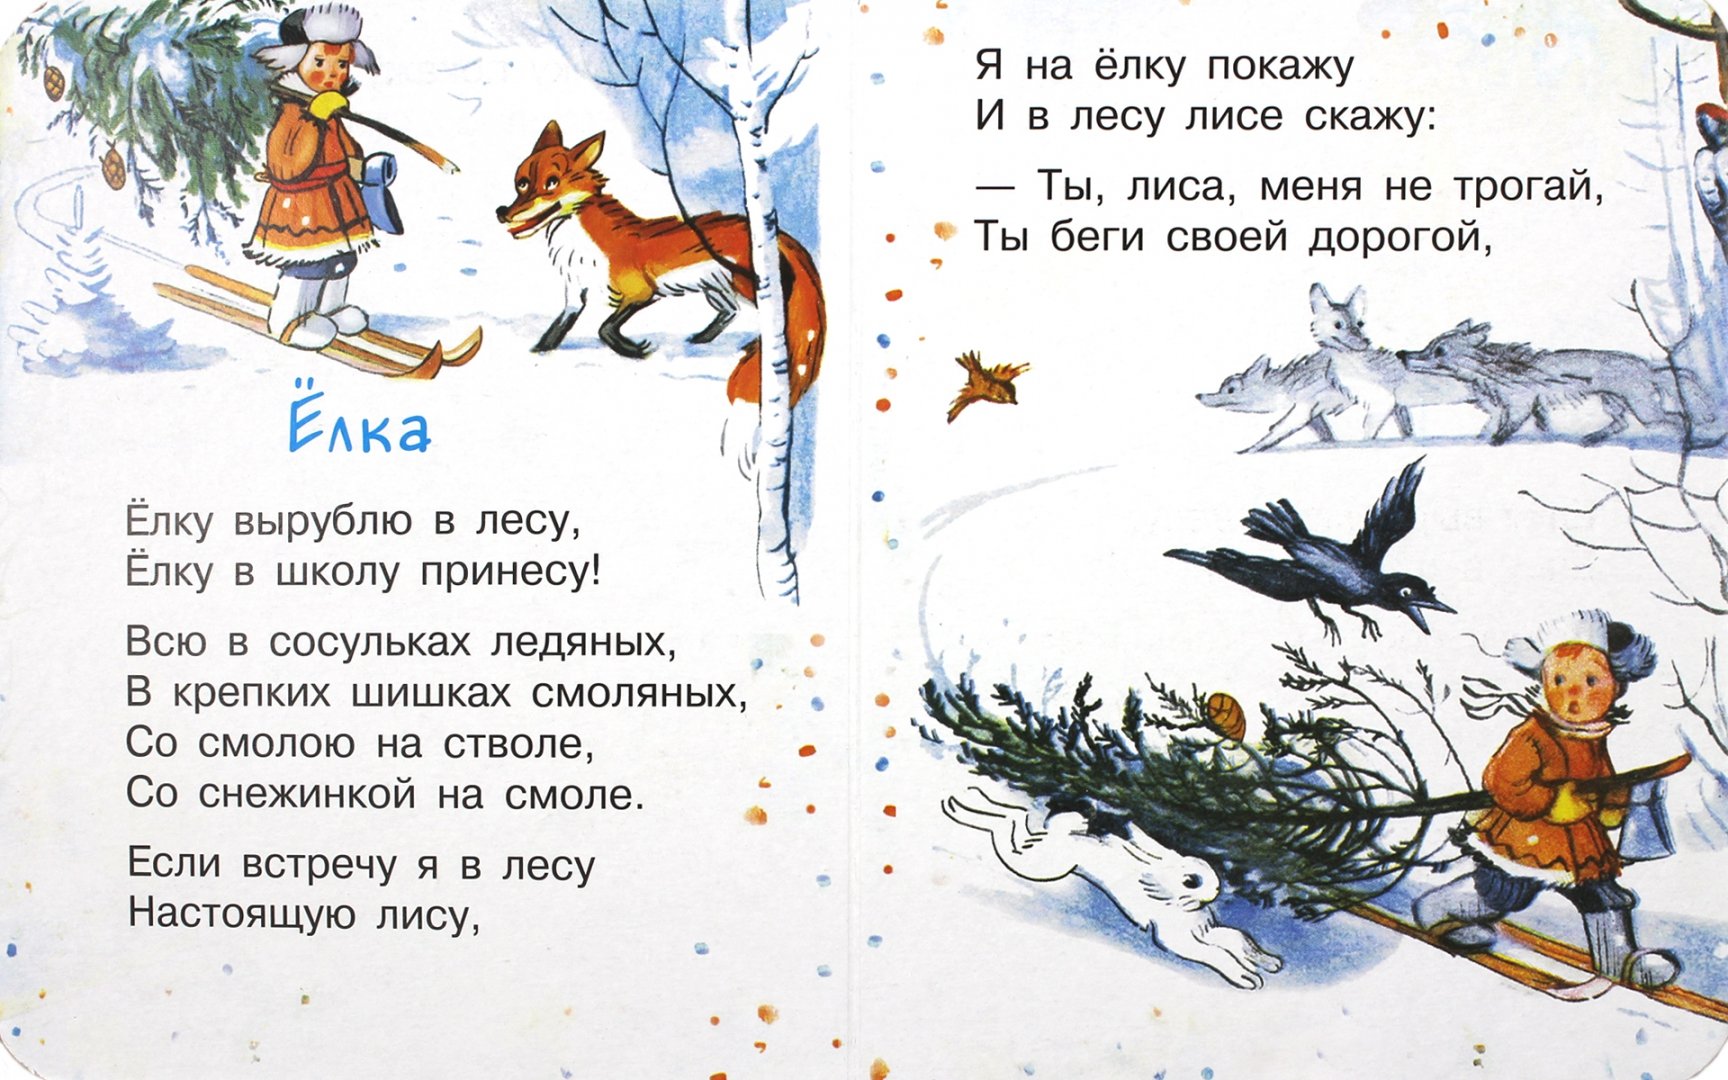 Иллюстрация 1 из 4 для Стихи к новому году - Сергей Михалков | Лабиринт - книги. Источник: Лабиринт